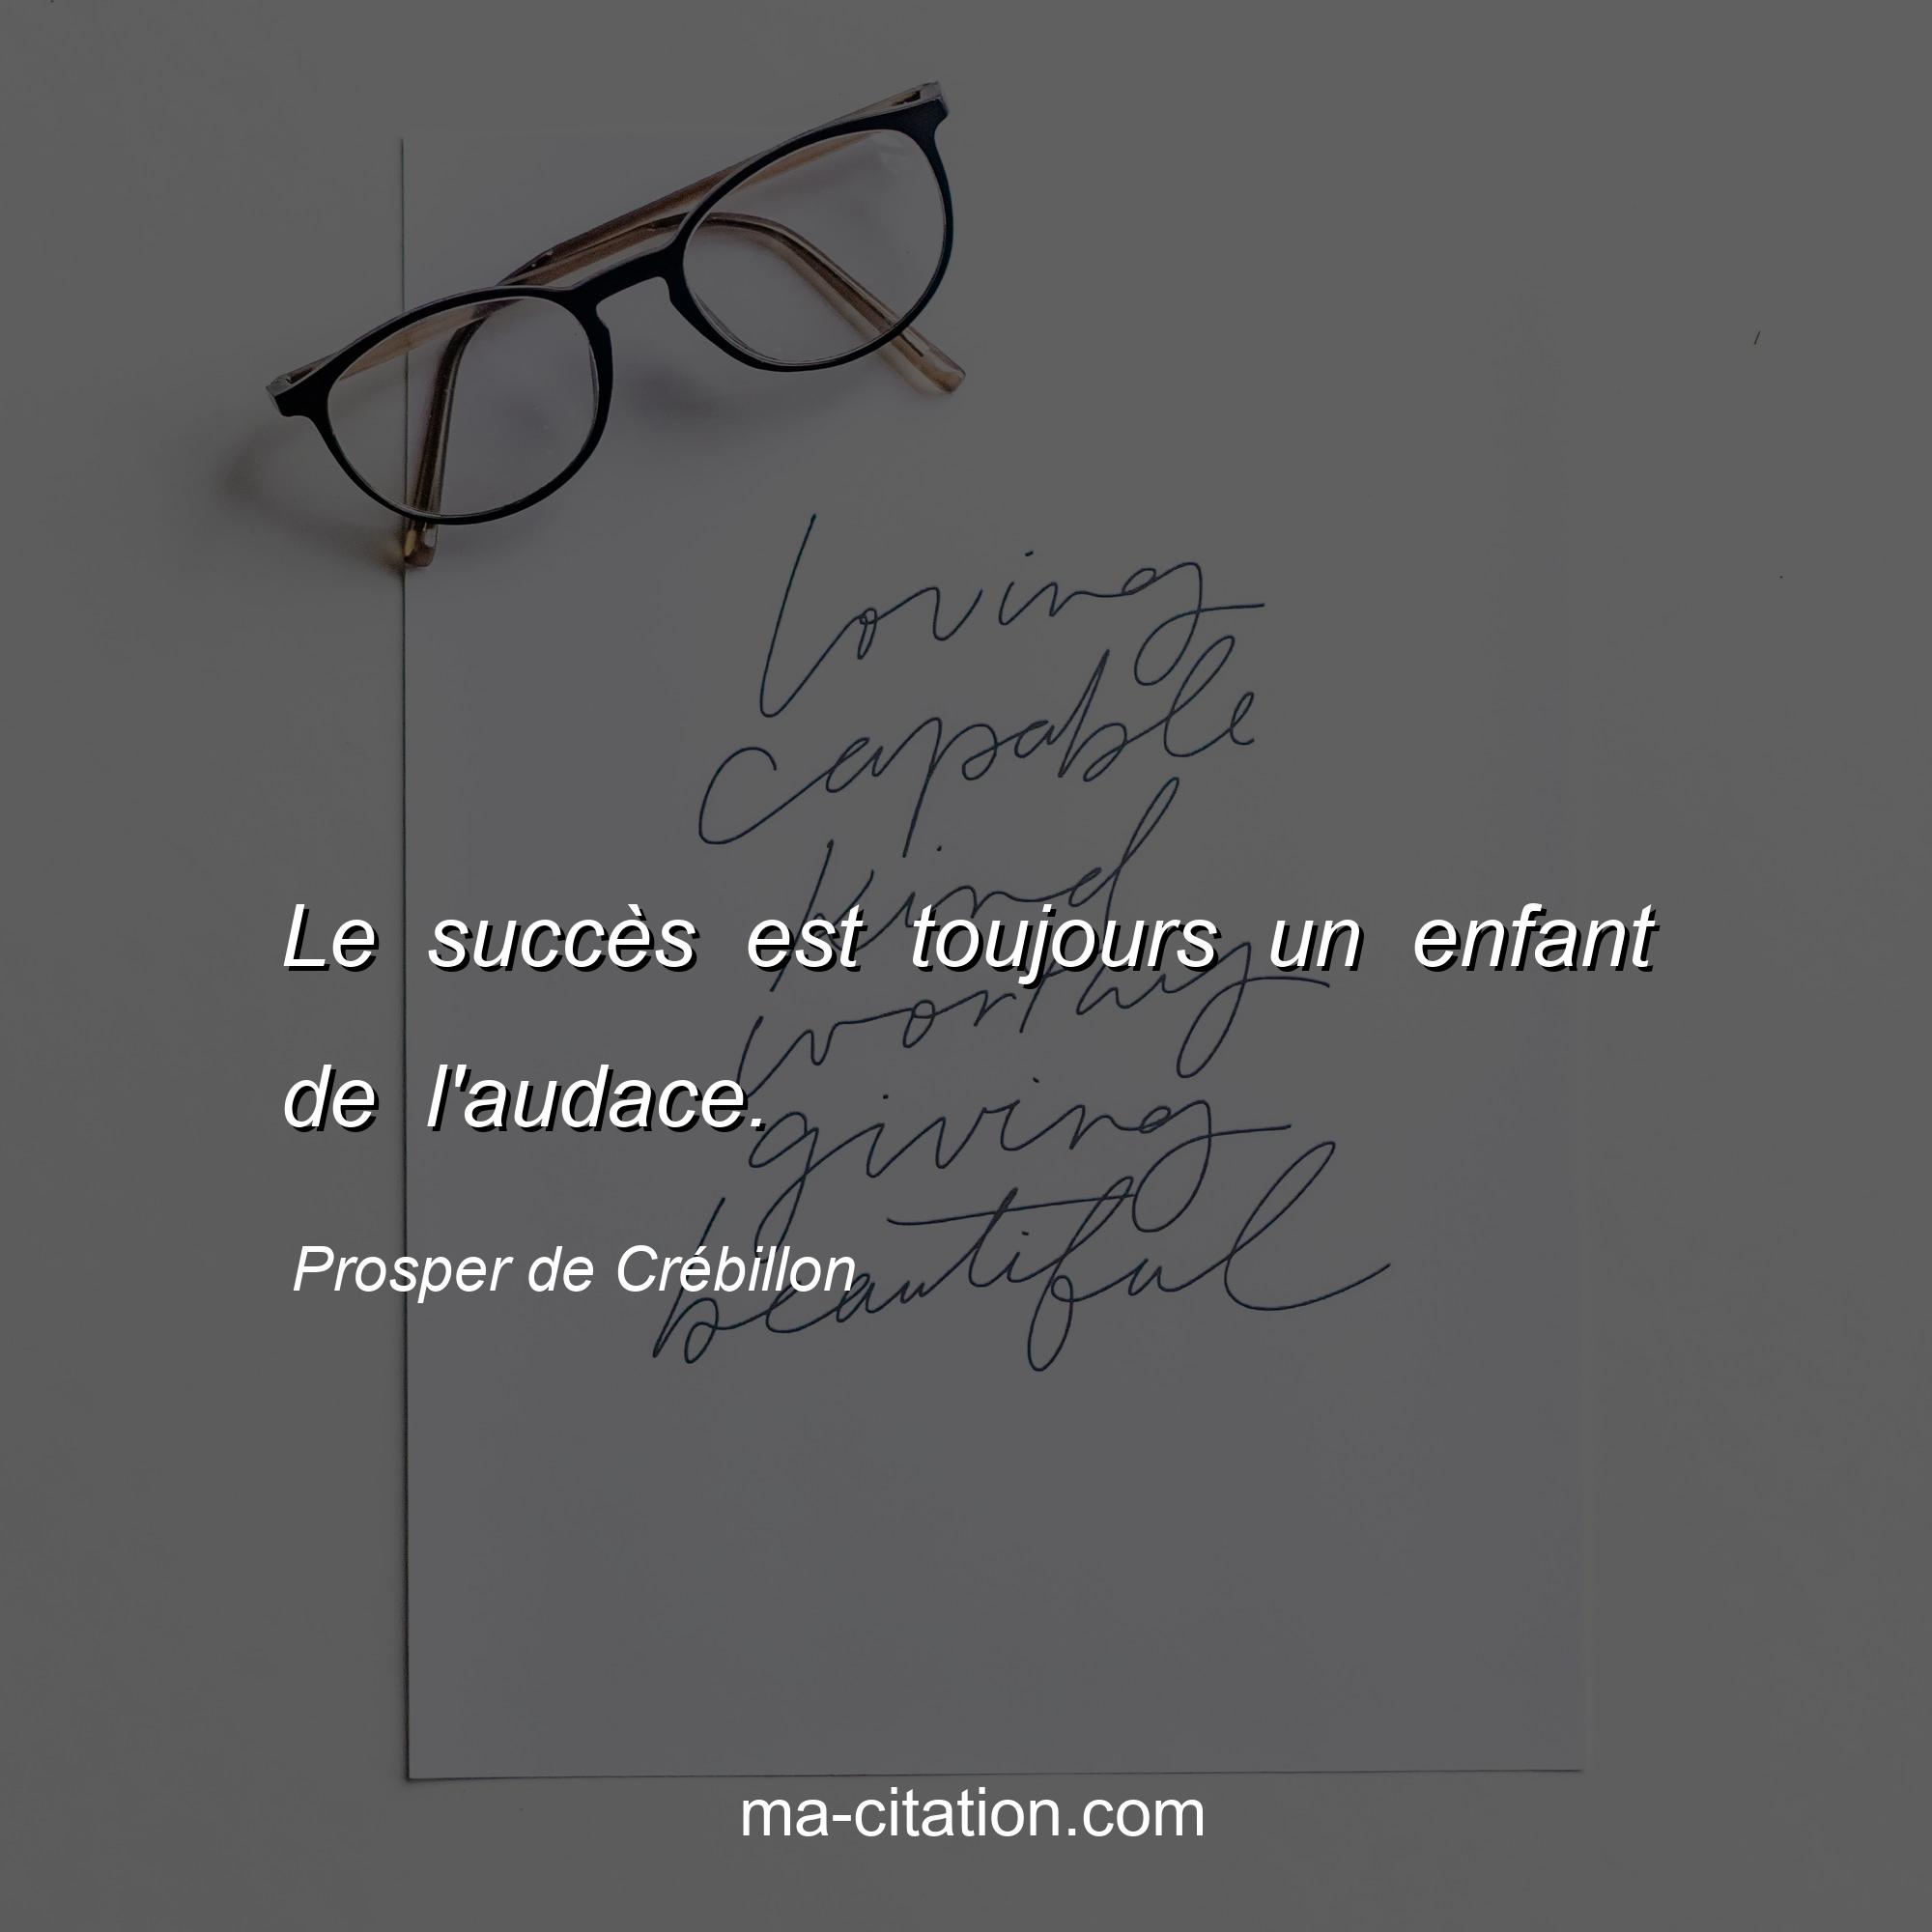 Prosper de Crébillon : Le succès est toujours un enfant de l'audace.